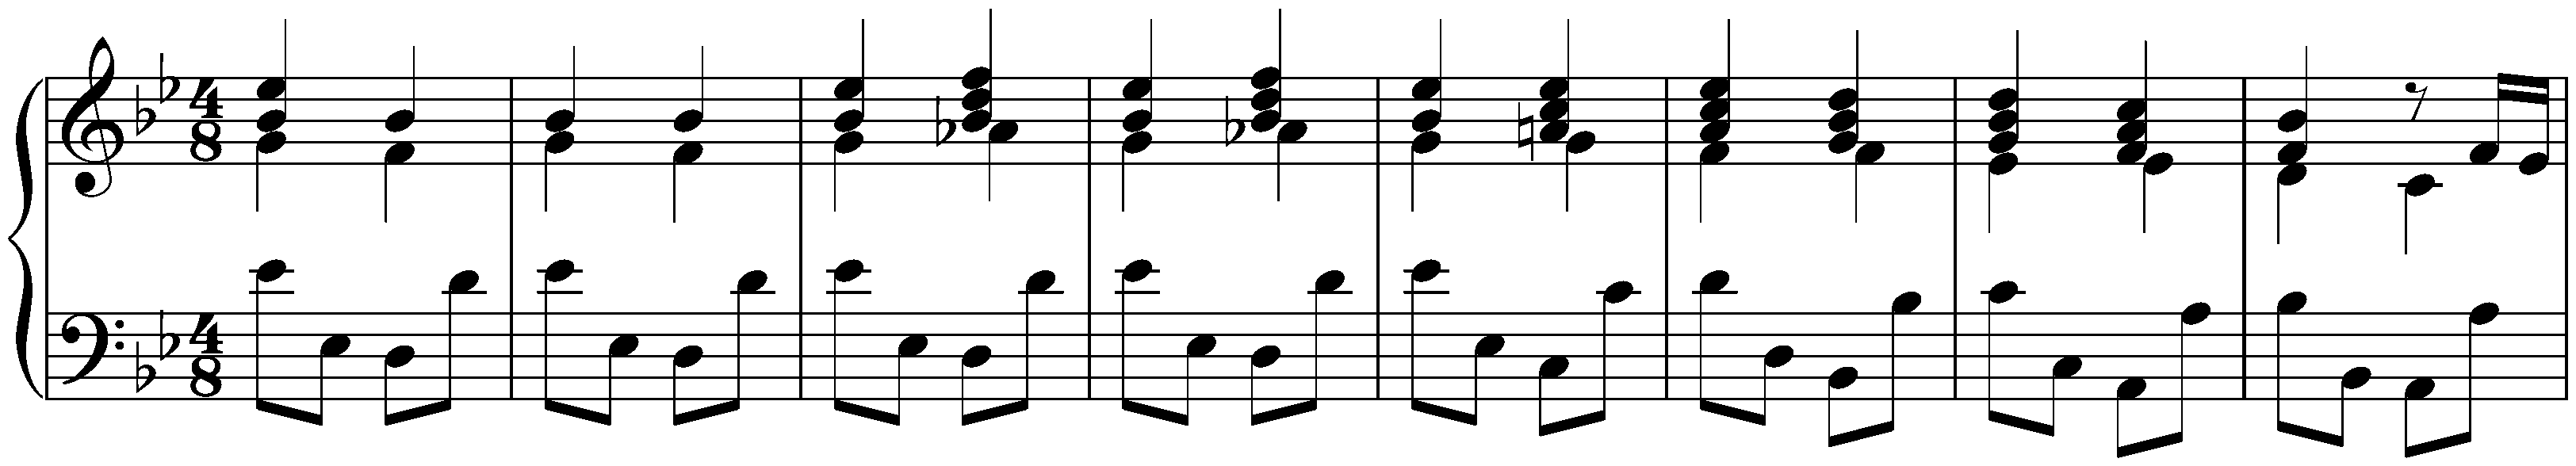 Prelude (Fantasia) in C minor, BWV 921